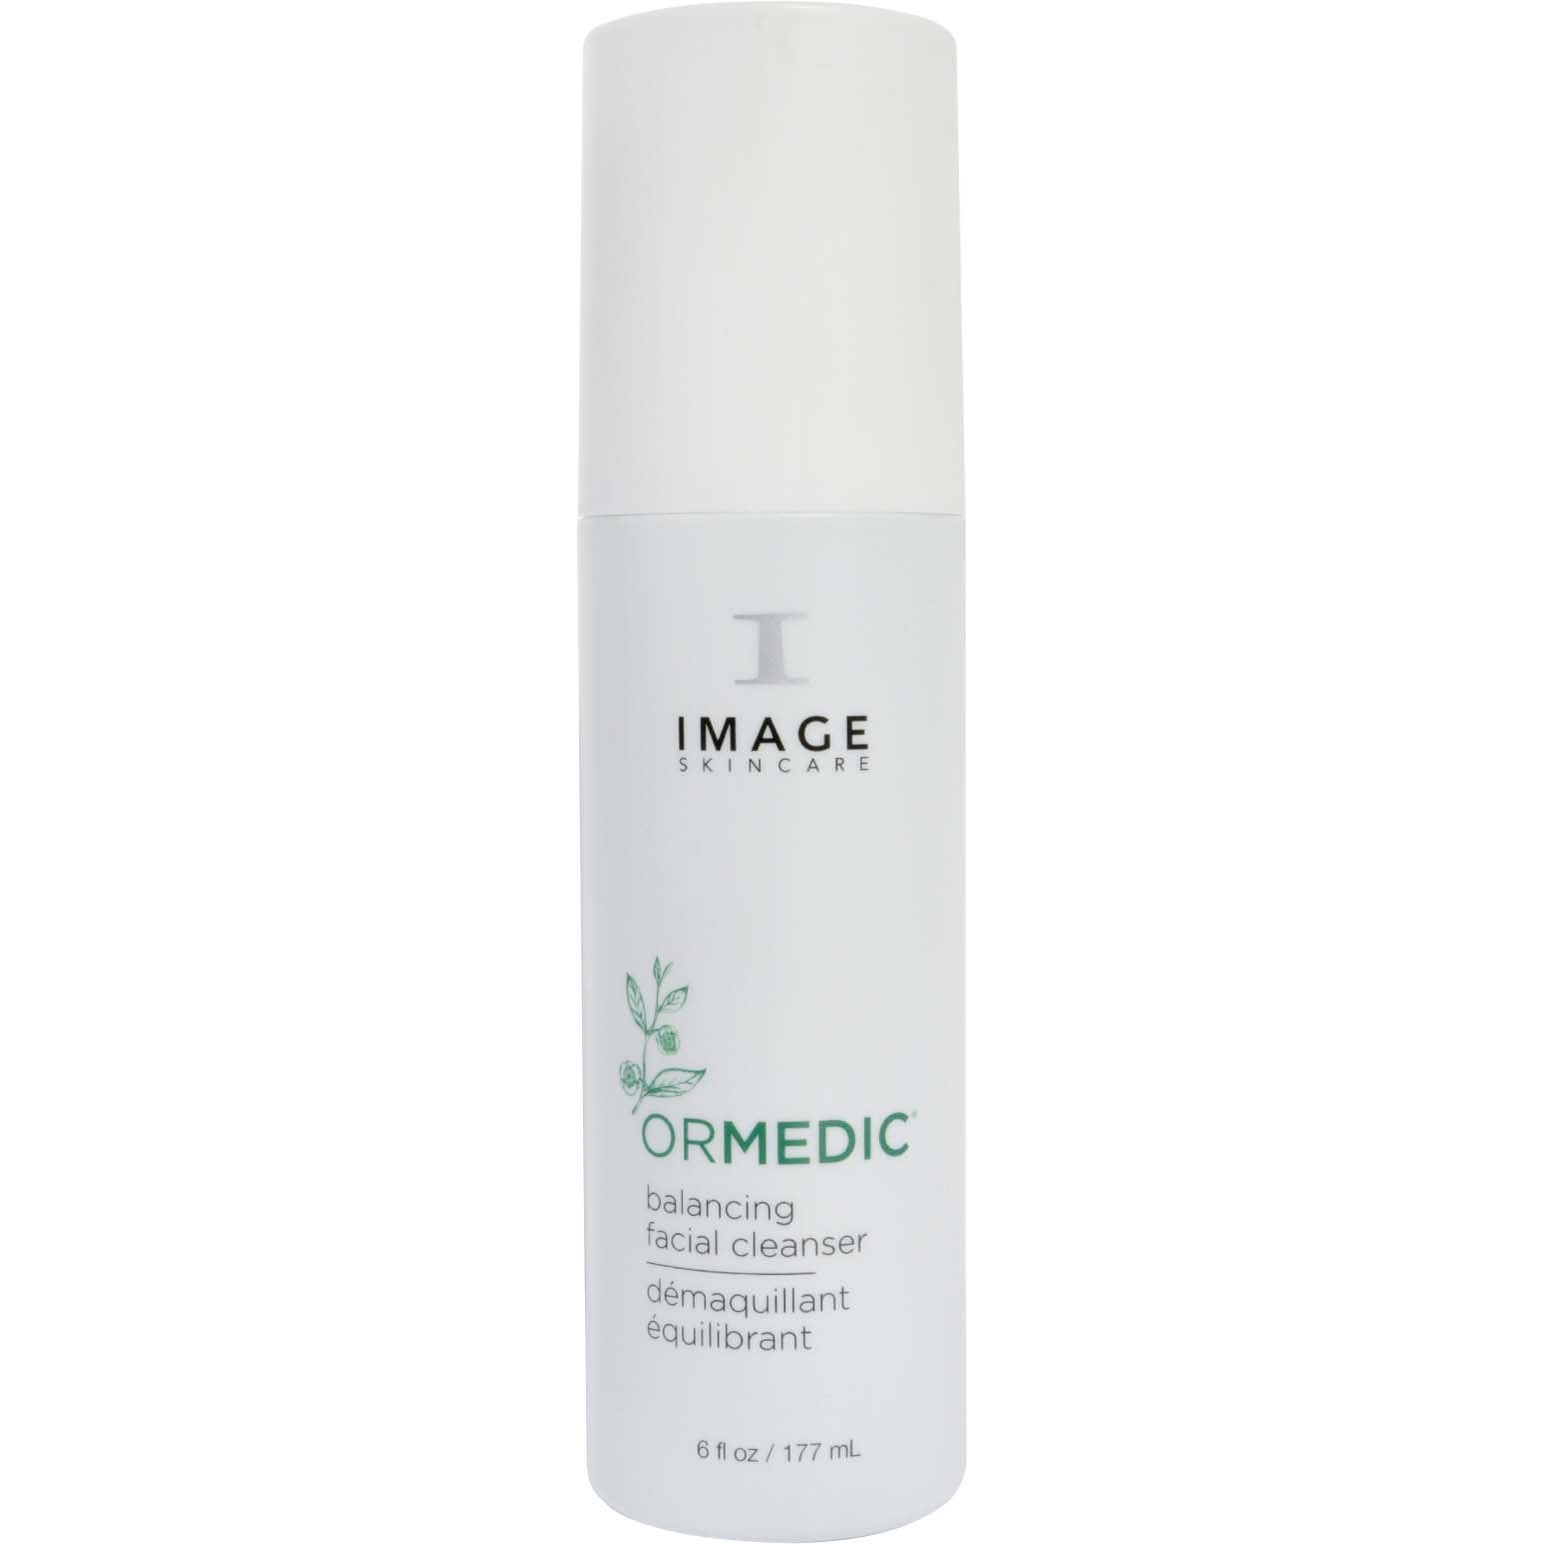 IMAGE Skincare Ormedic Balancing Facial Cleanser 177 ml